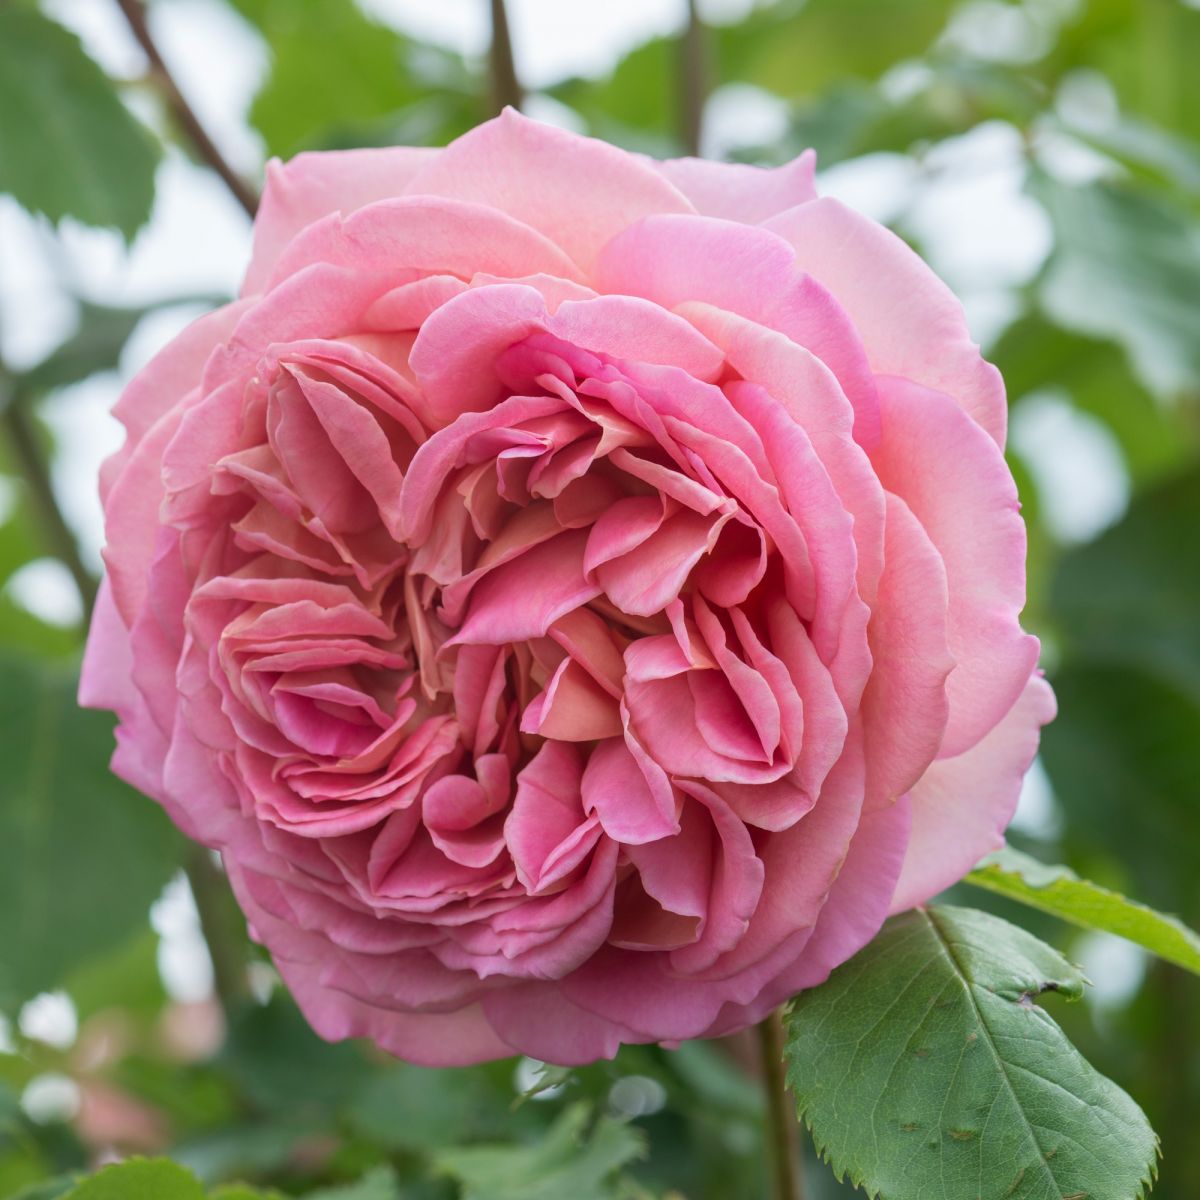 Tuyển tập những hình ảnh hoa hồng đẹp và ý nghĩa của những đóa hoa hồng có thể chưa biết - [Kích thước hình ảnh: 1200x1200 px]